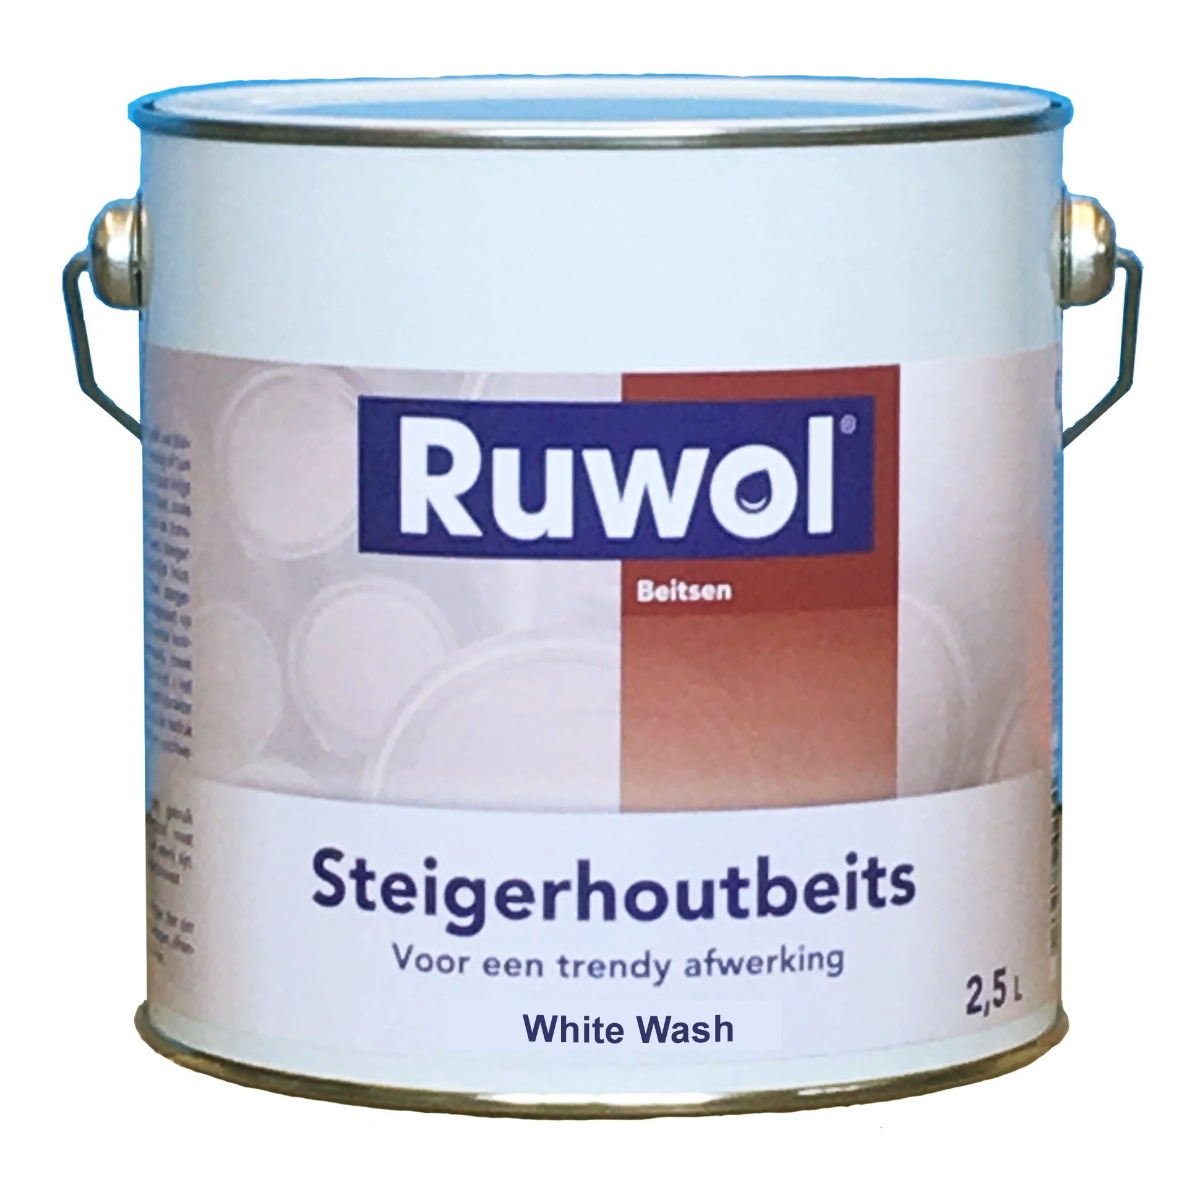 Ruwol Steigerhoutbeits White Wash 2,5 liter